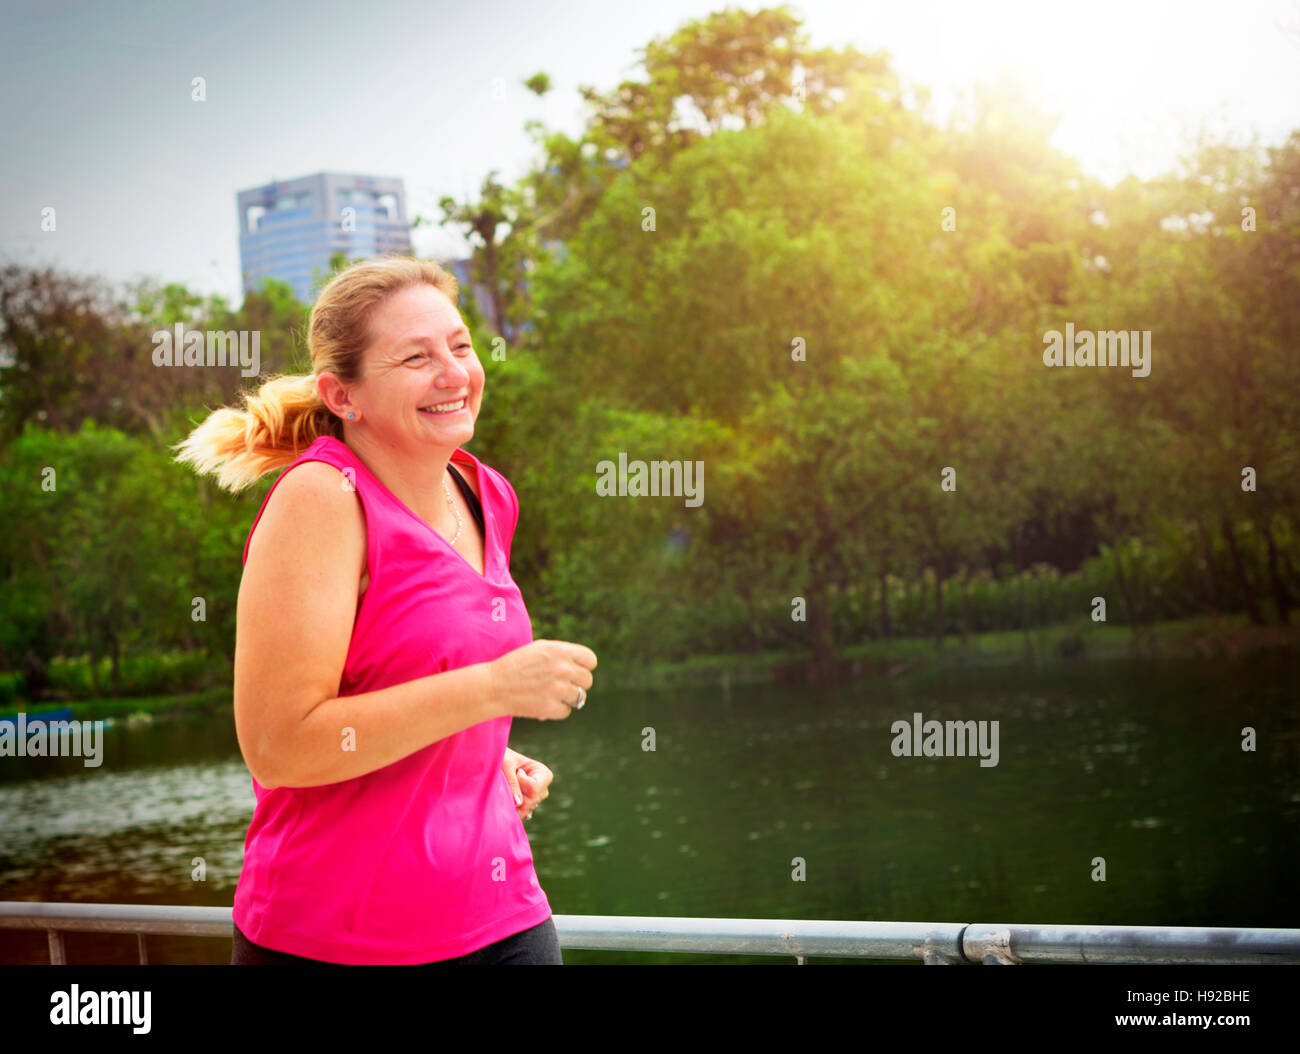 Frau Workout Joggen Sport sportliche Konzept Stockfoto